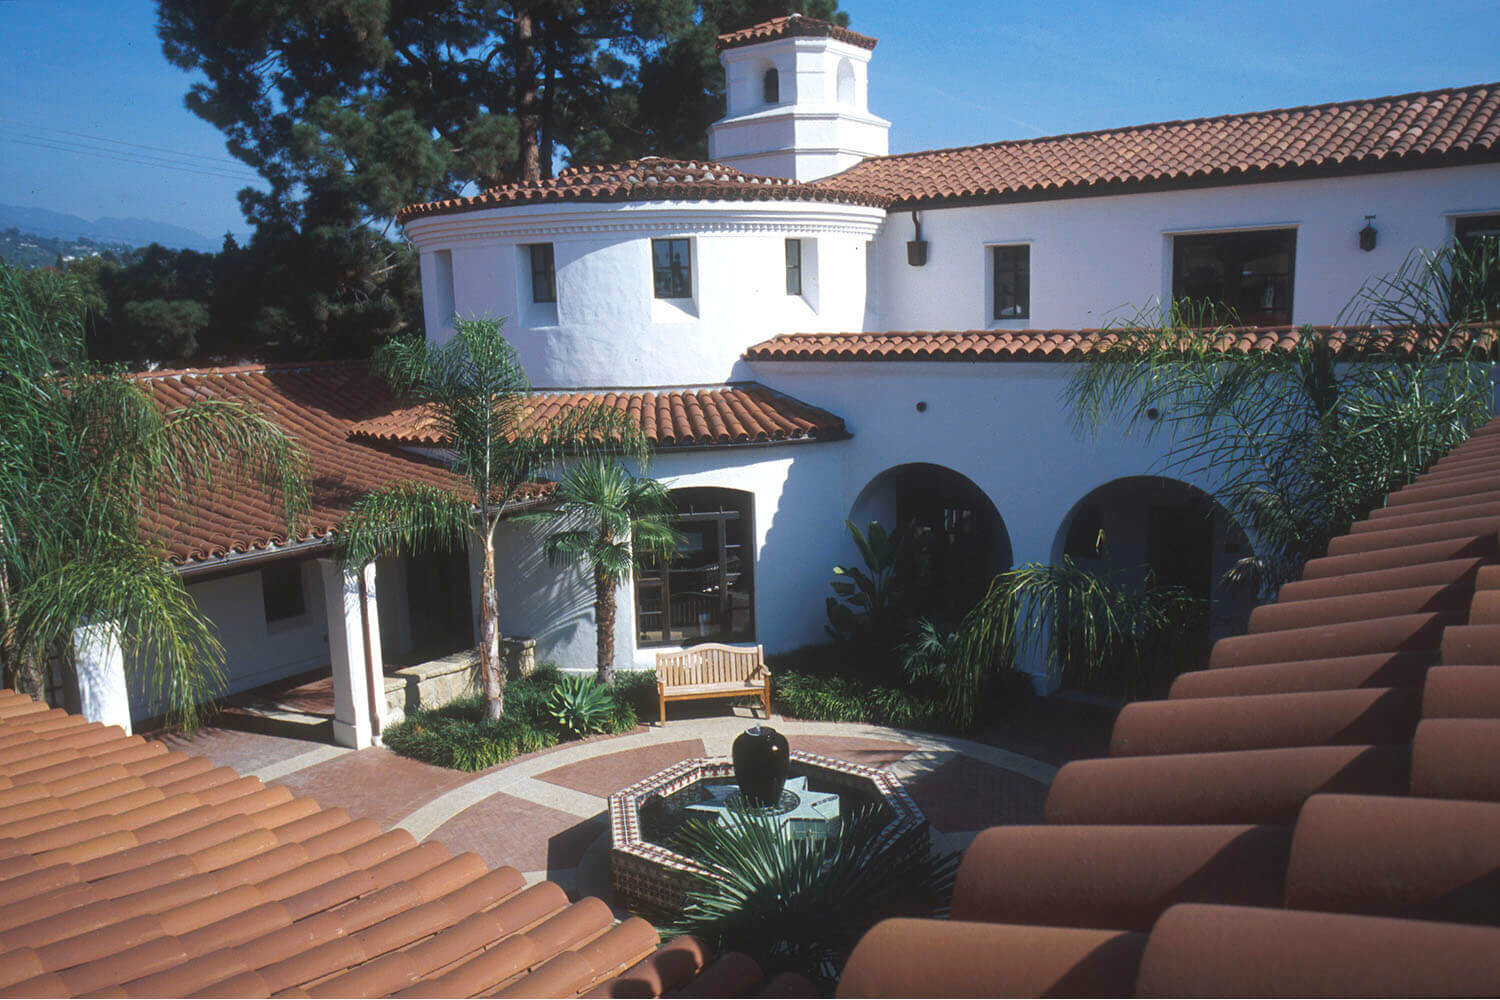 Braille Institute of Santa Barbara